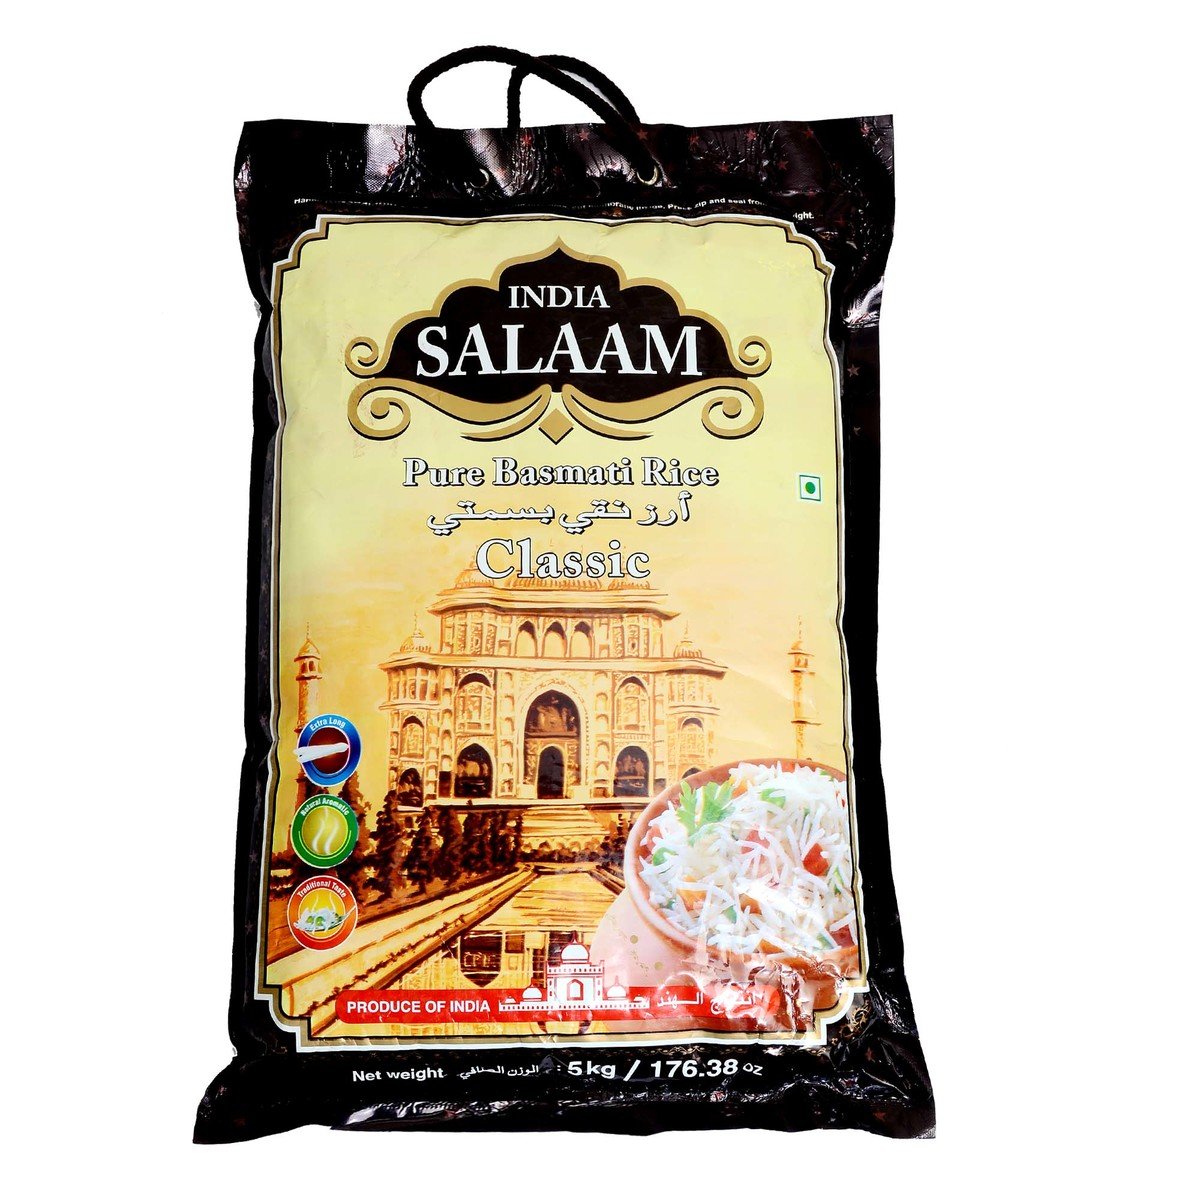 India Salaam Pure Basmati Rice 5 kg